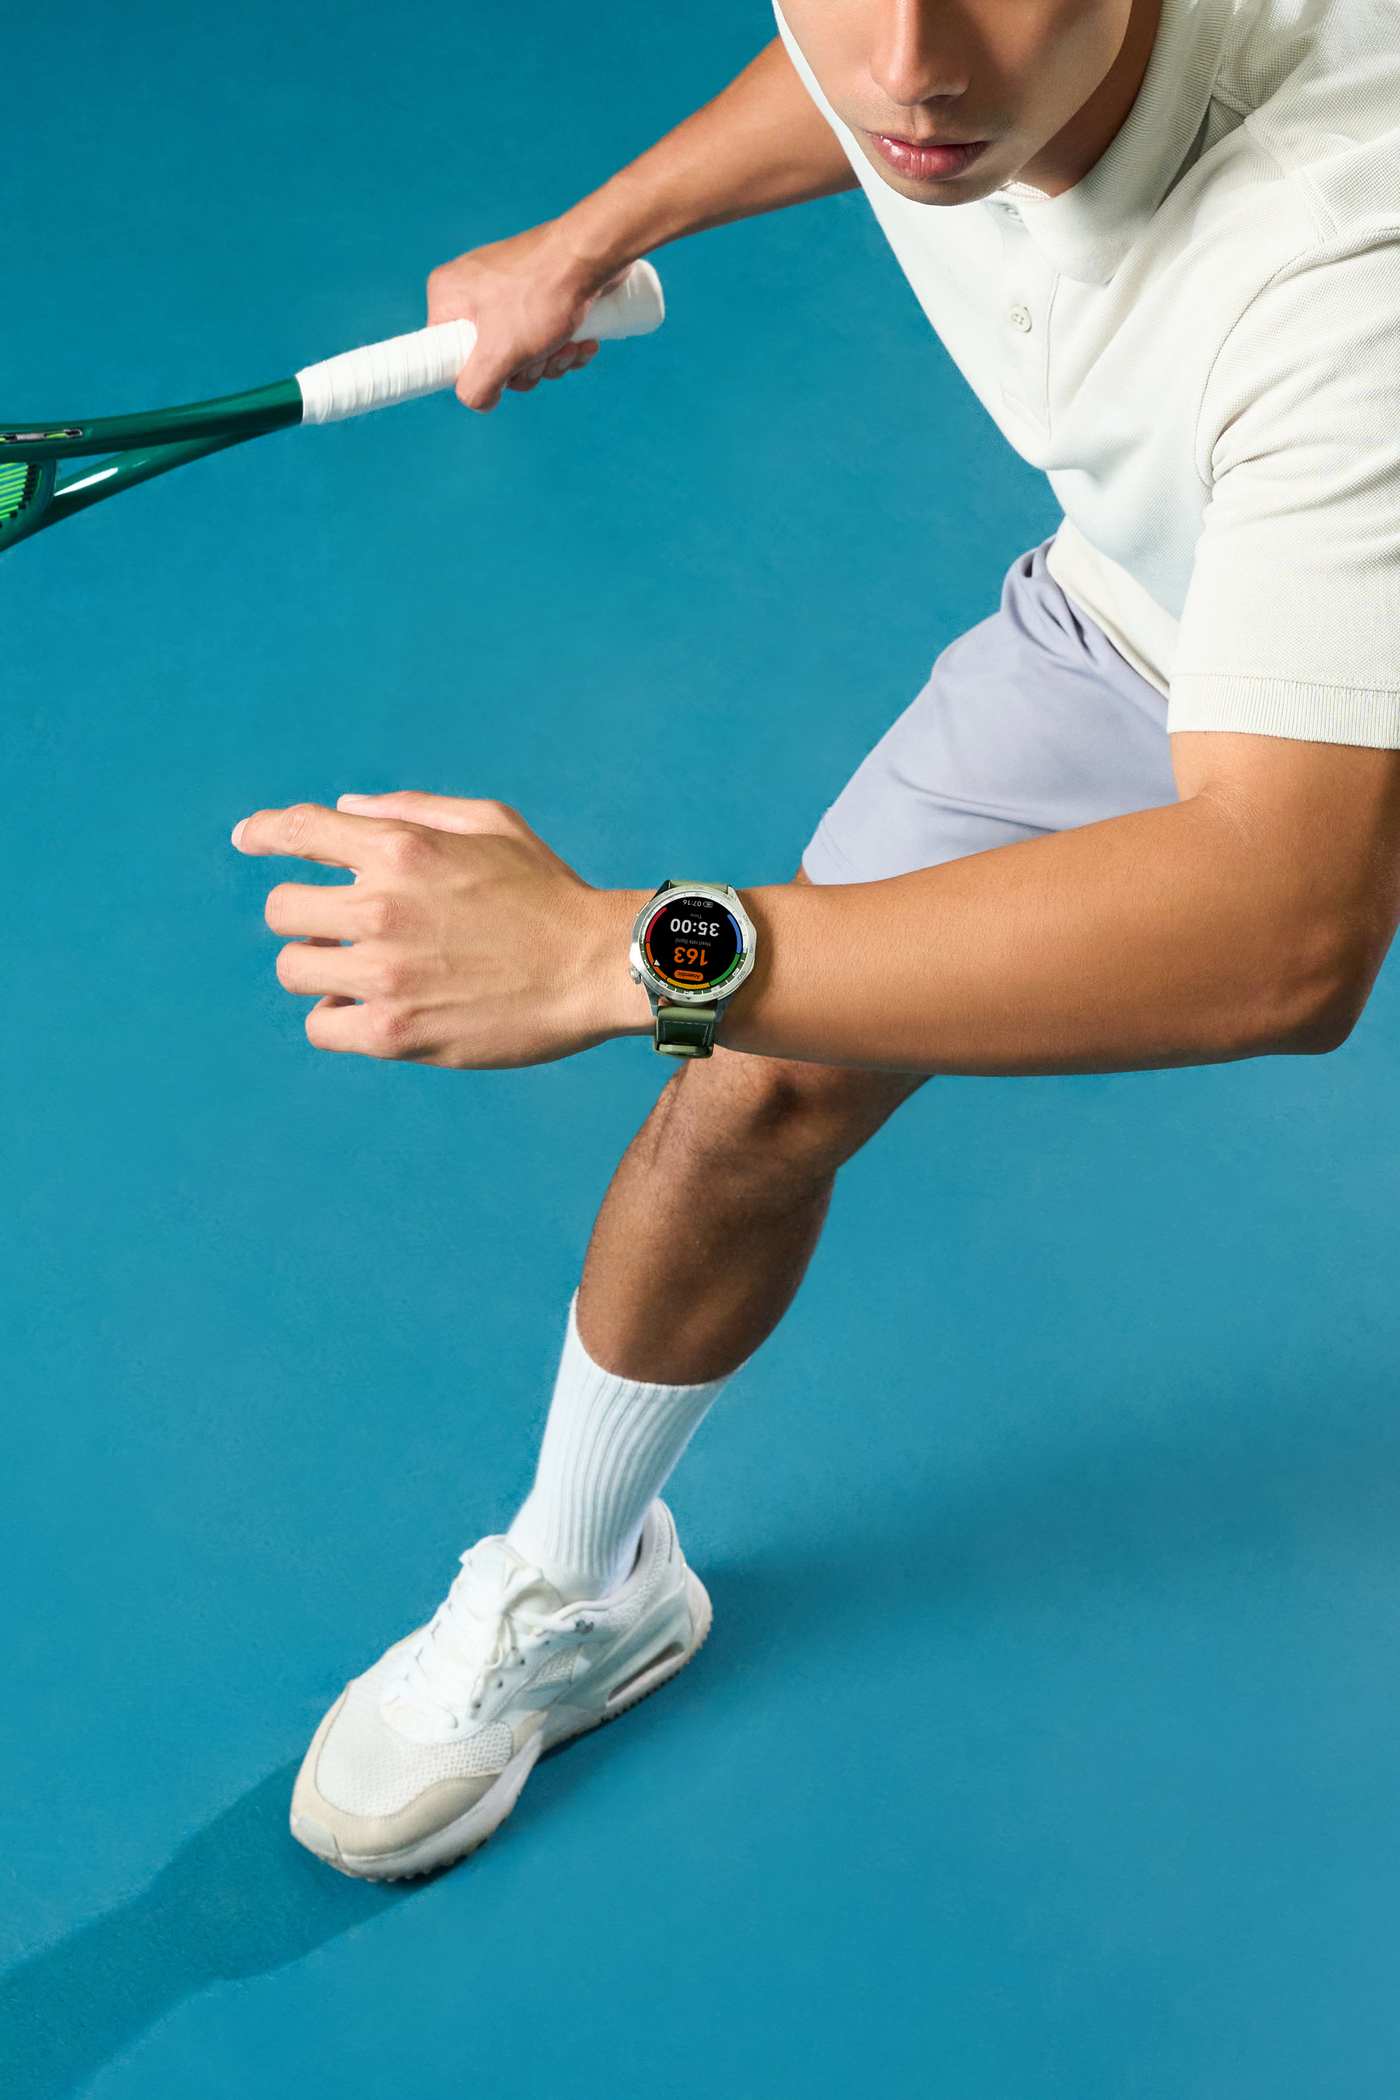 Sì, il tuo smartwatch ti fa stare in forma